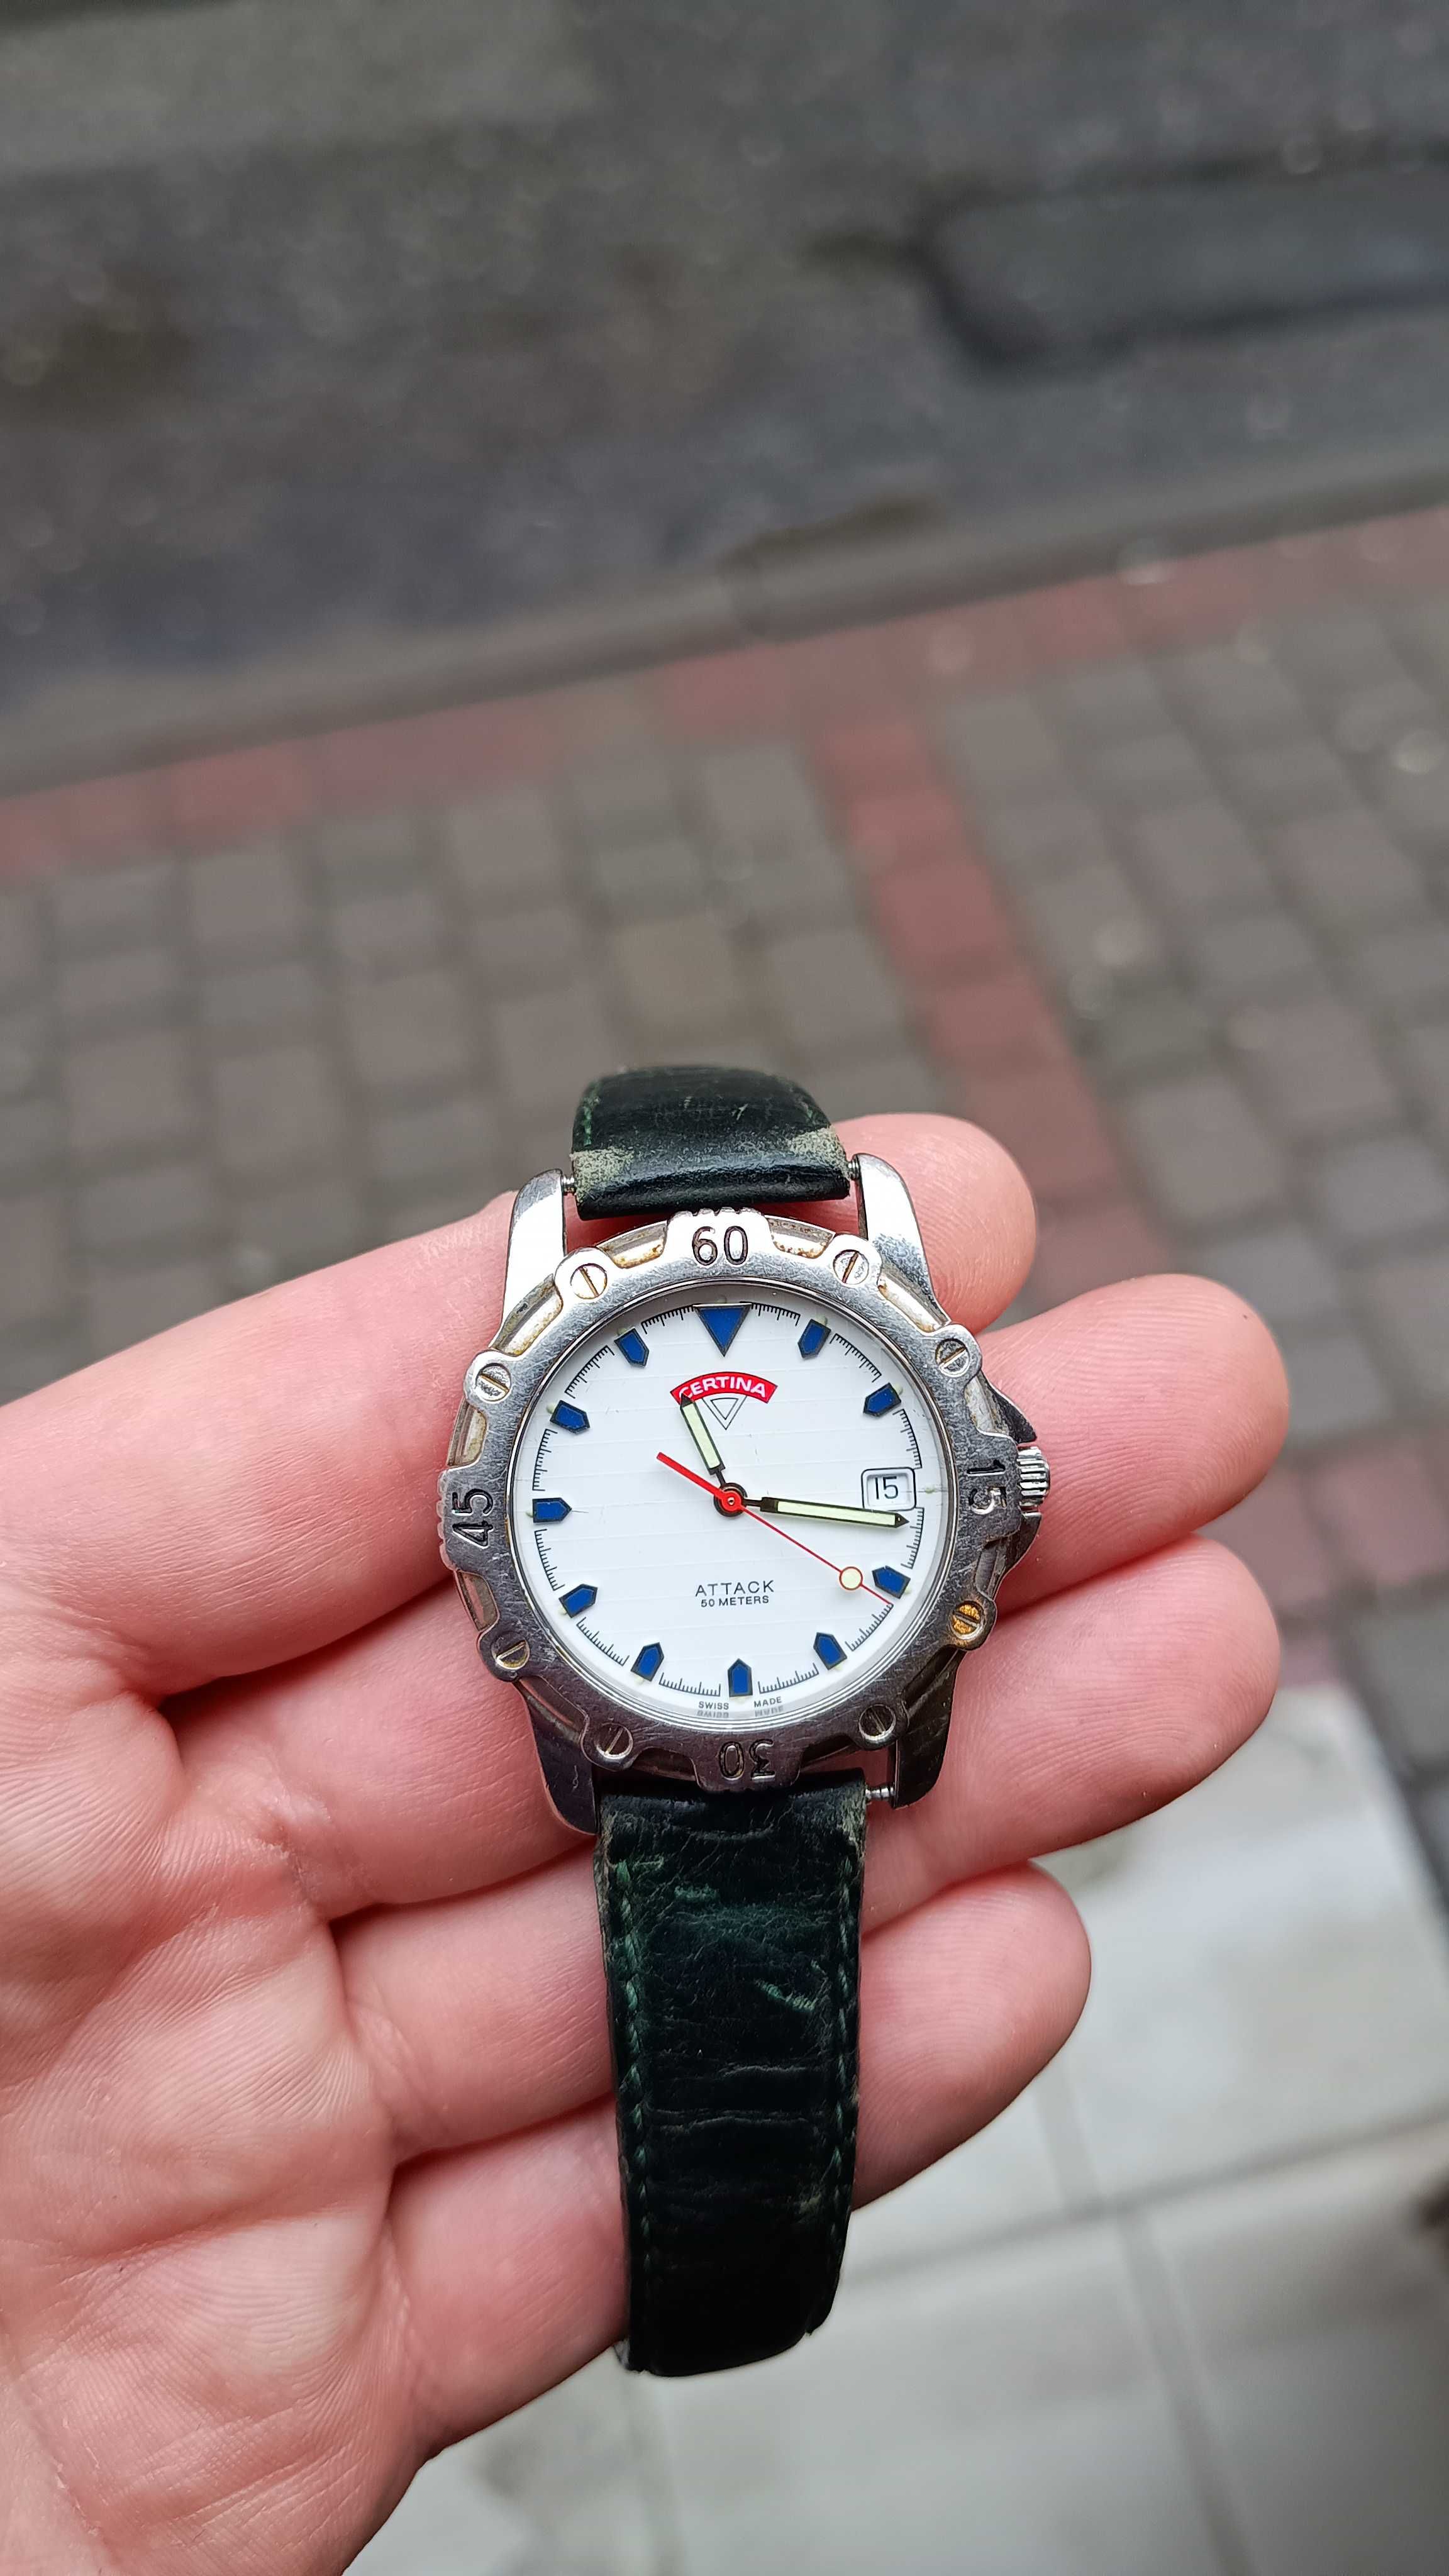 Sprzedam zegarek Certina Attack-quartz